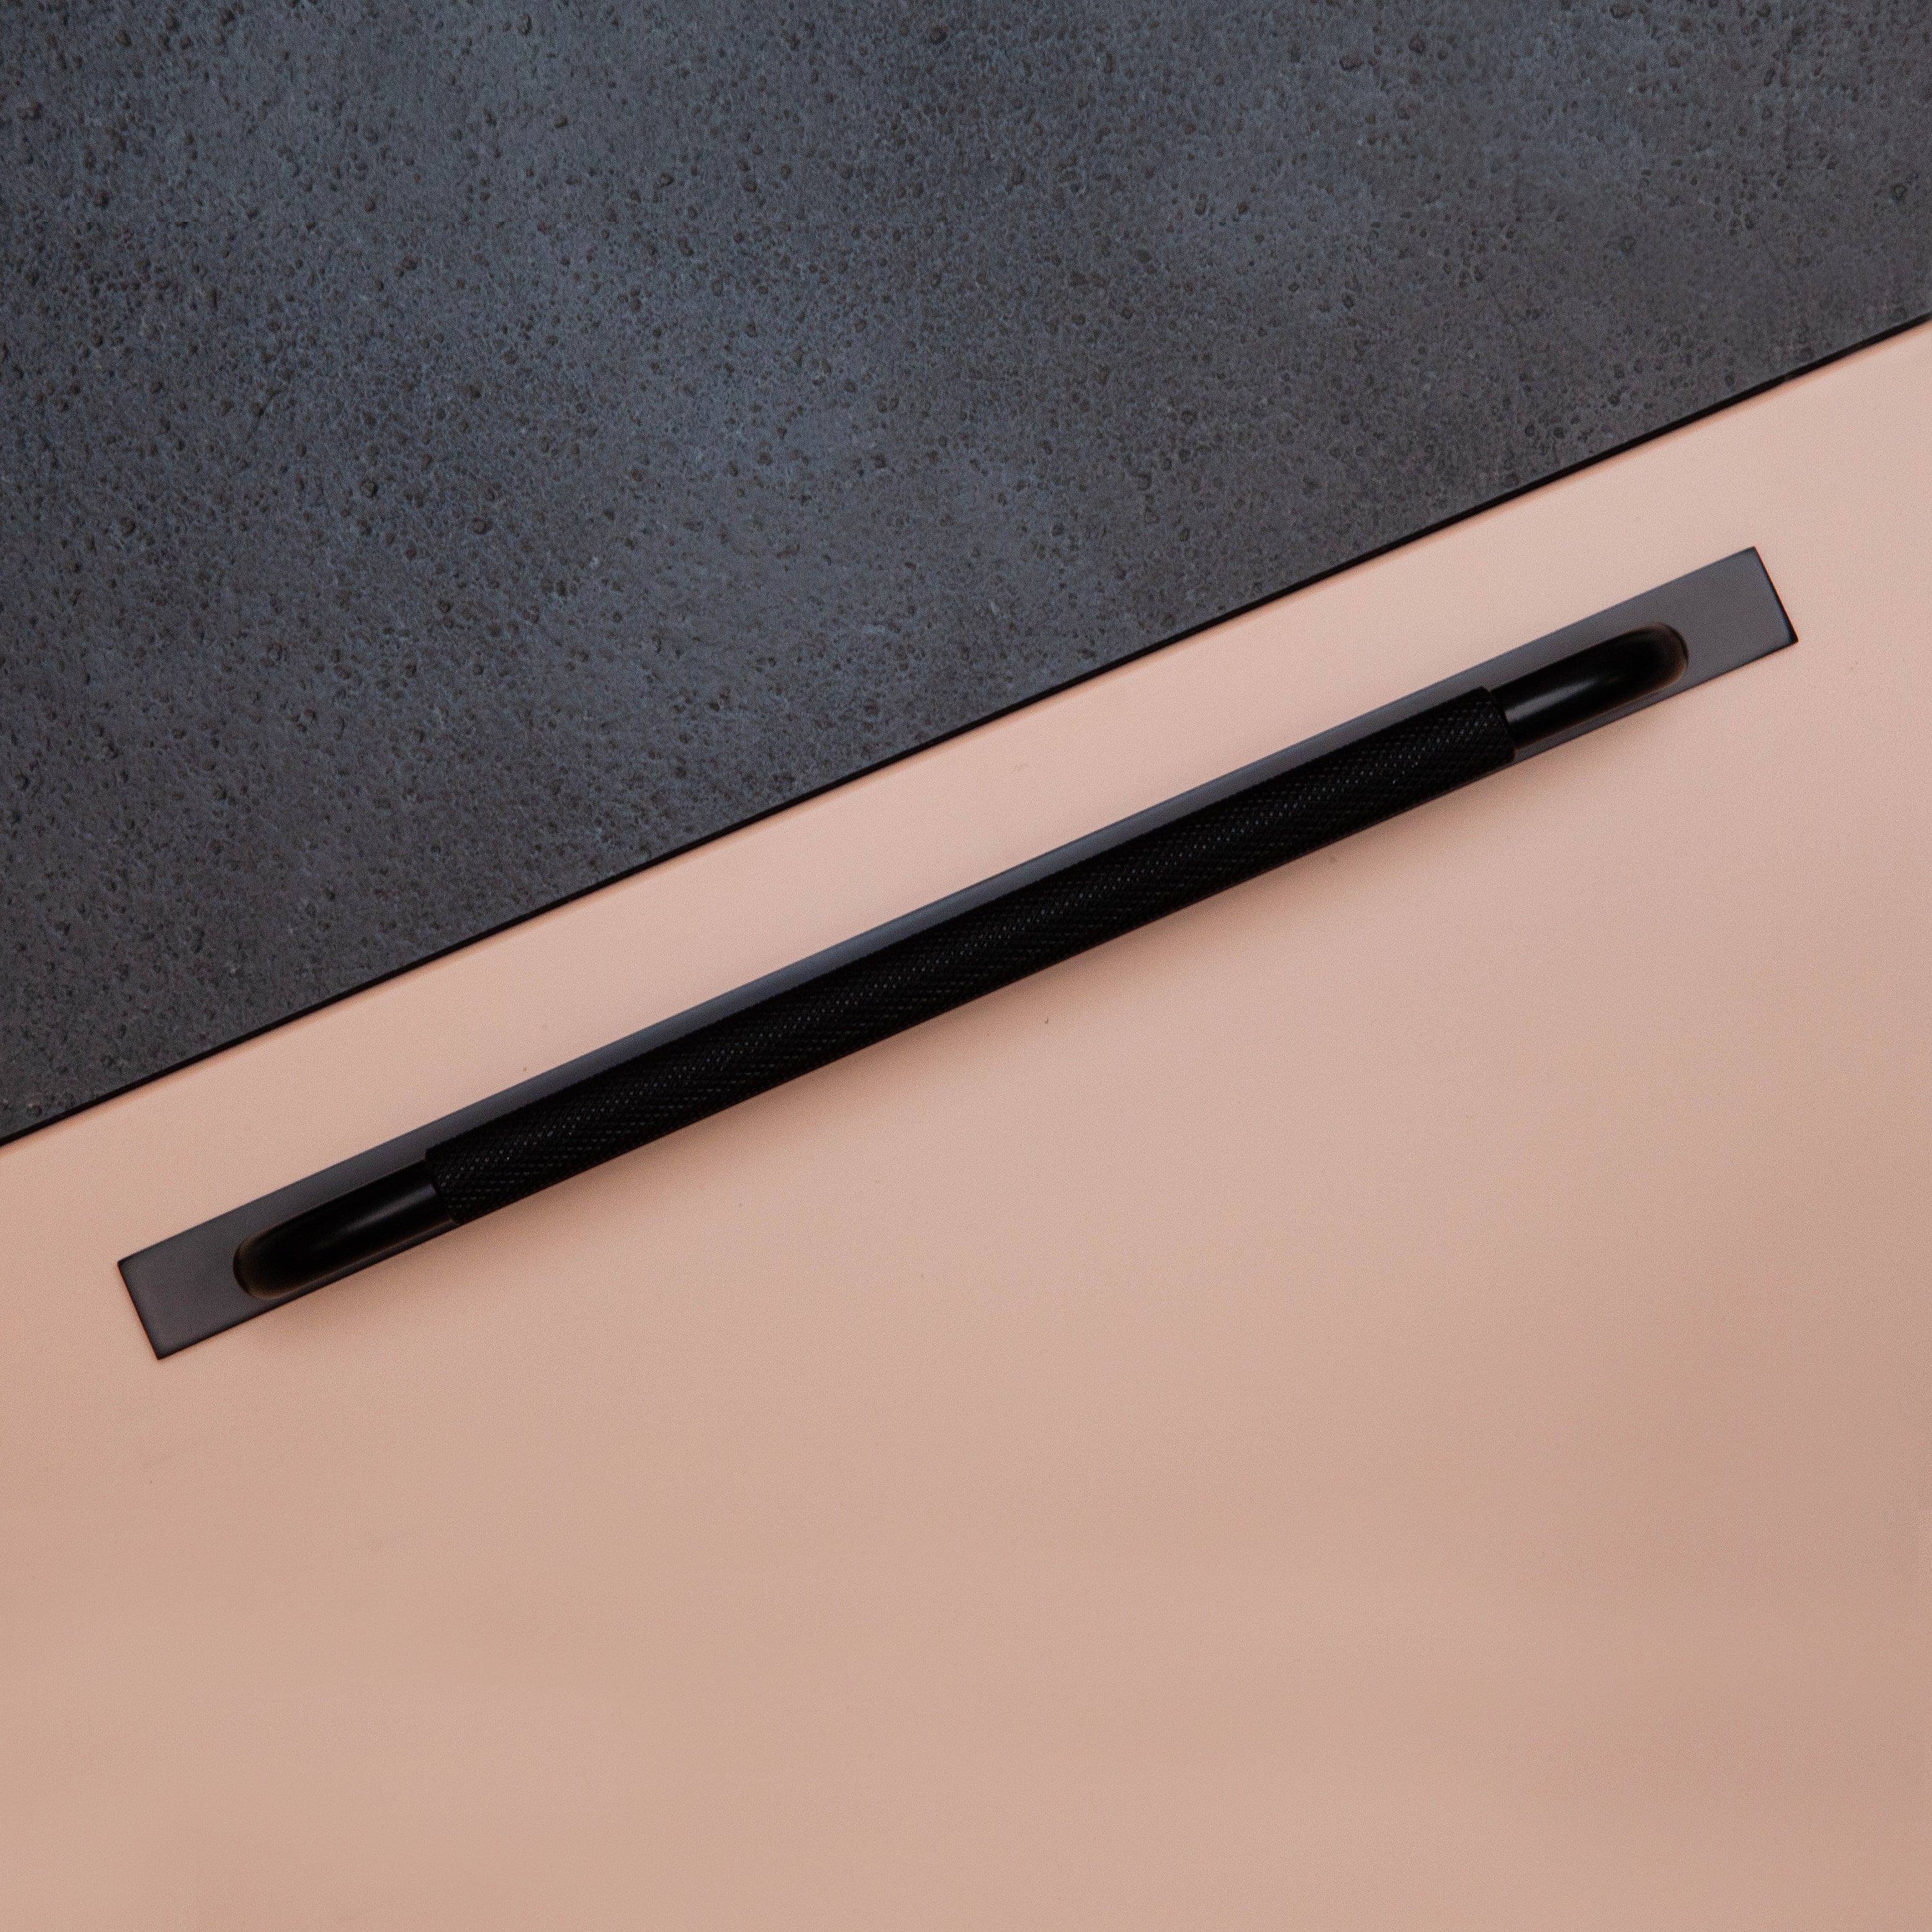 Poignée Poignée Helix avec base, couleur Noir mat, ref 309085-11, dimensions 266 x 10 mm